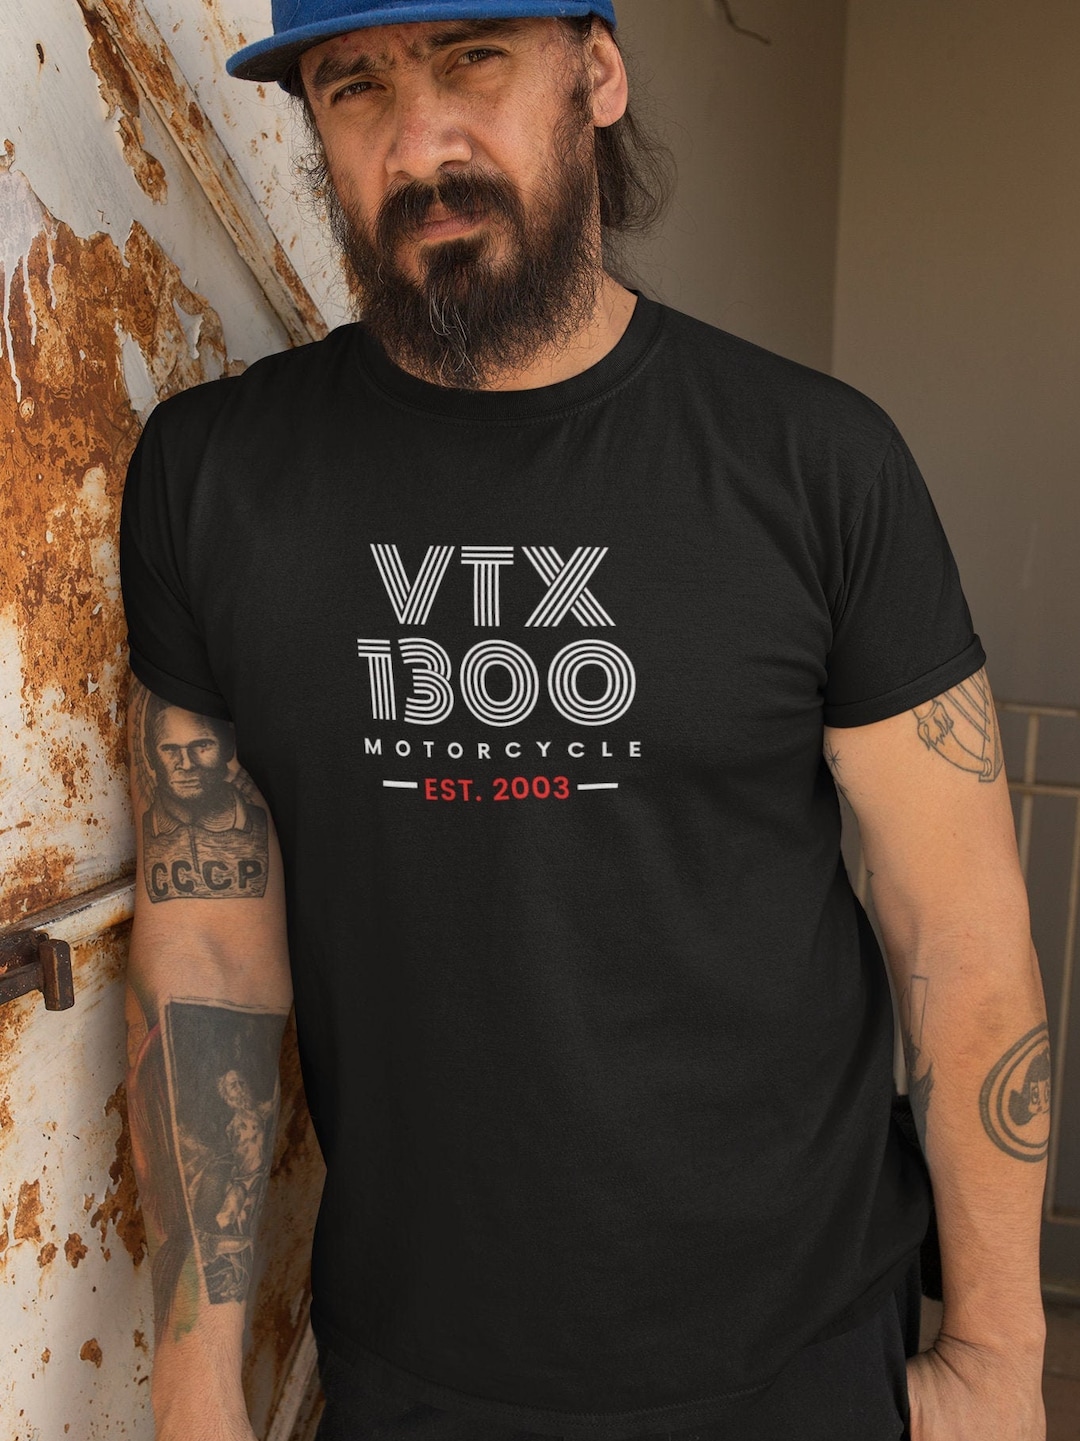 HONDA VTX 1300 T-shirt Motorcycle Gift Gift. - Etsy